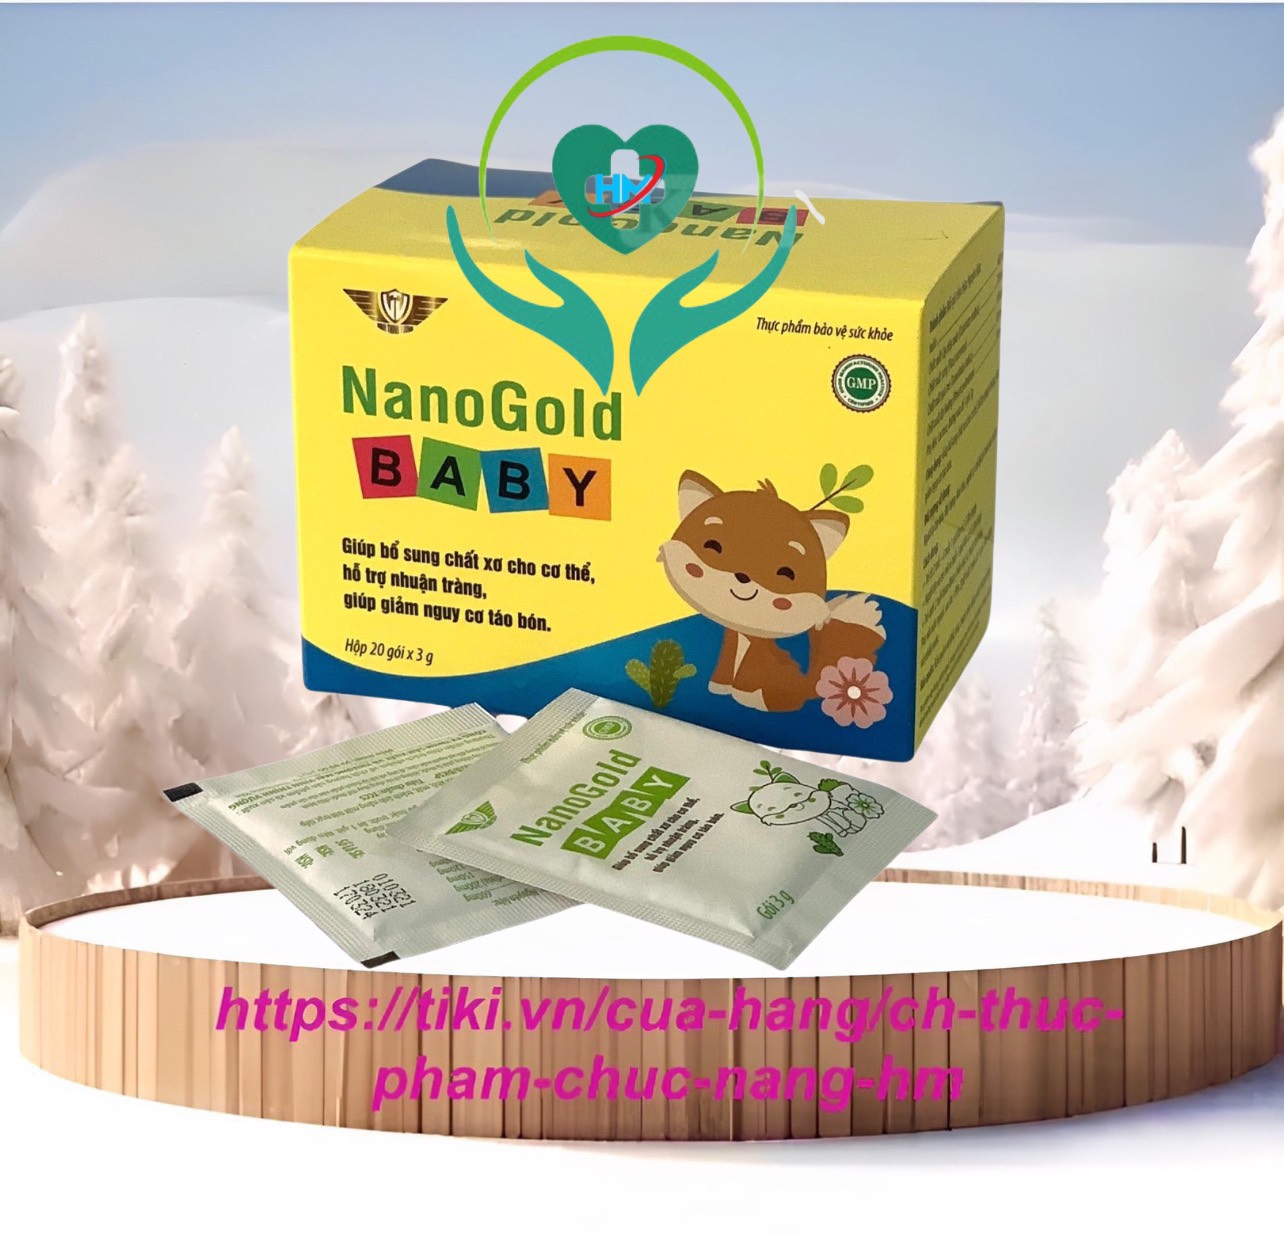 Cốm táo bón NanoGold Baby Vinh Thịnh Vượng VV, hộp 20 gói, bổ sung chất xơ, ngừa táo bón cho trẻ